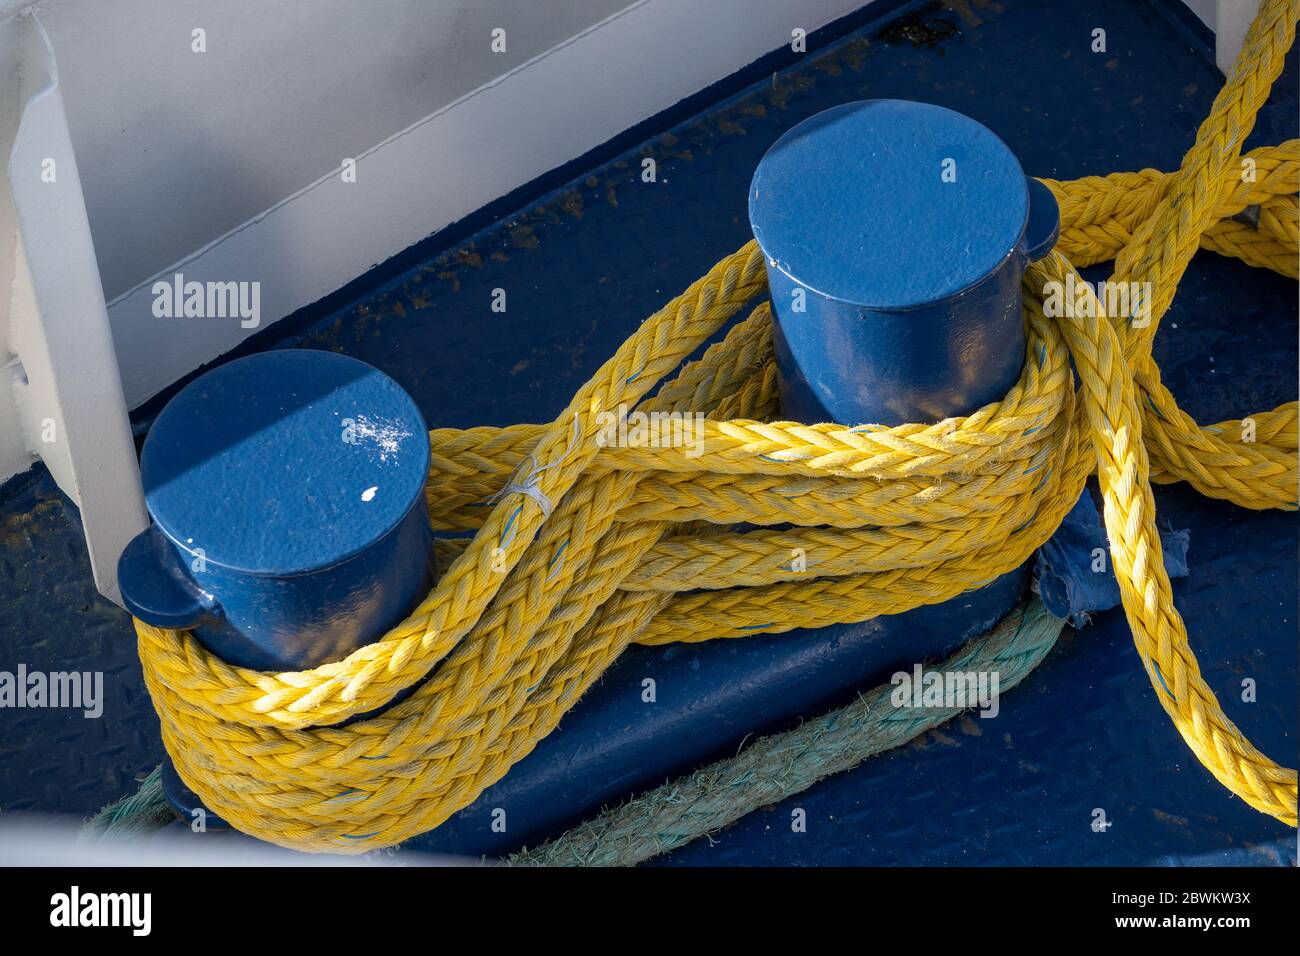 corde de bateau jaune attachée autour des bornes bleues d'amarrage sur un pont de bateau en métal Banque D'Images